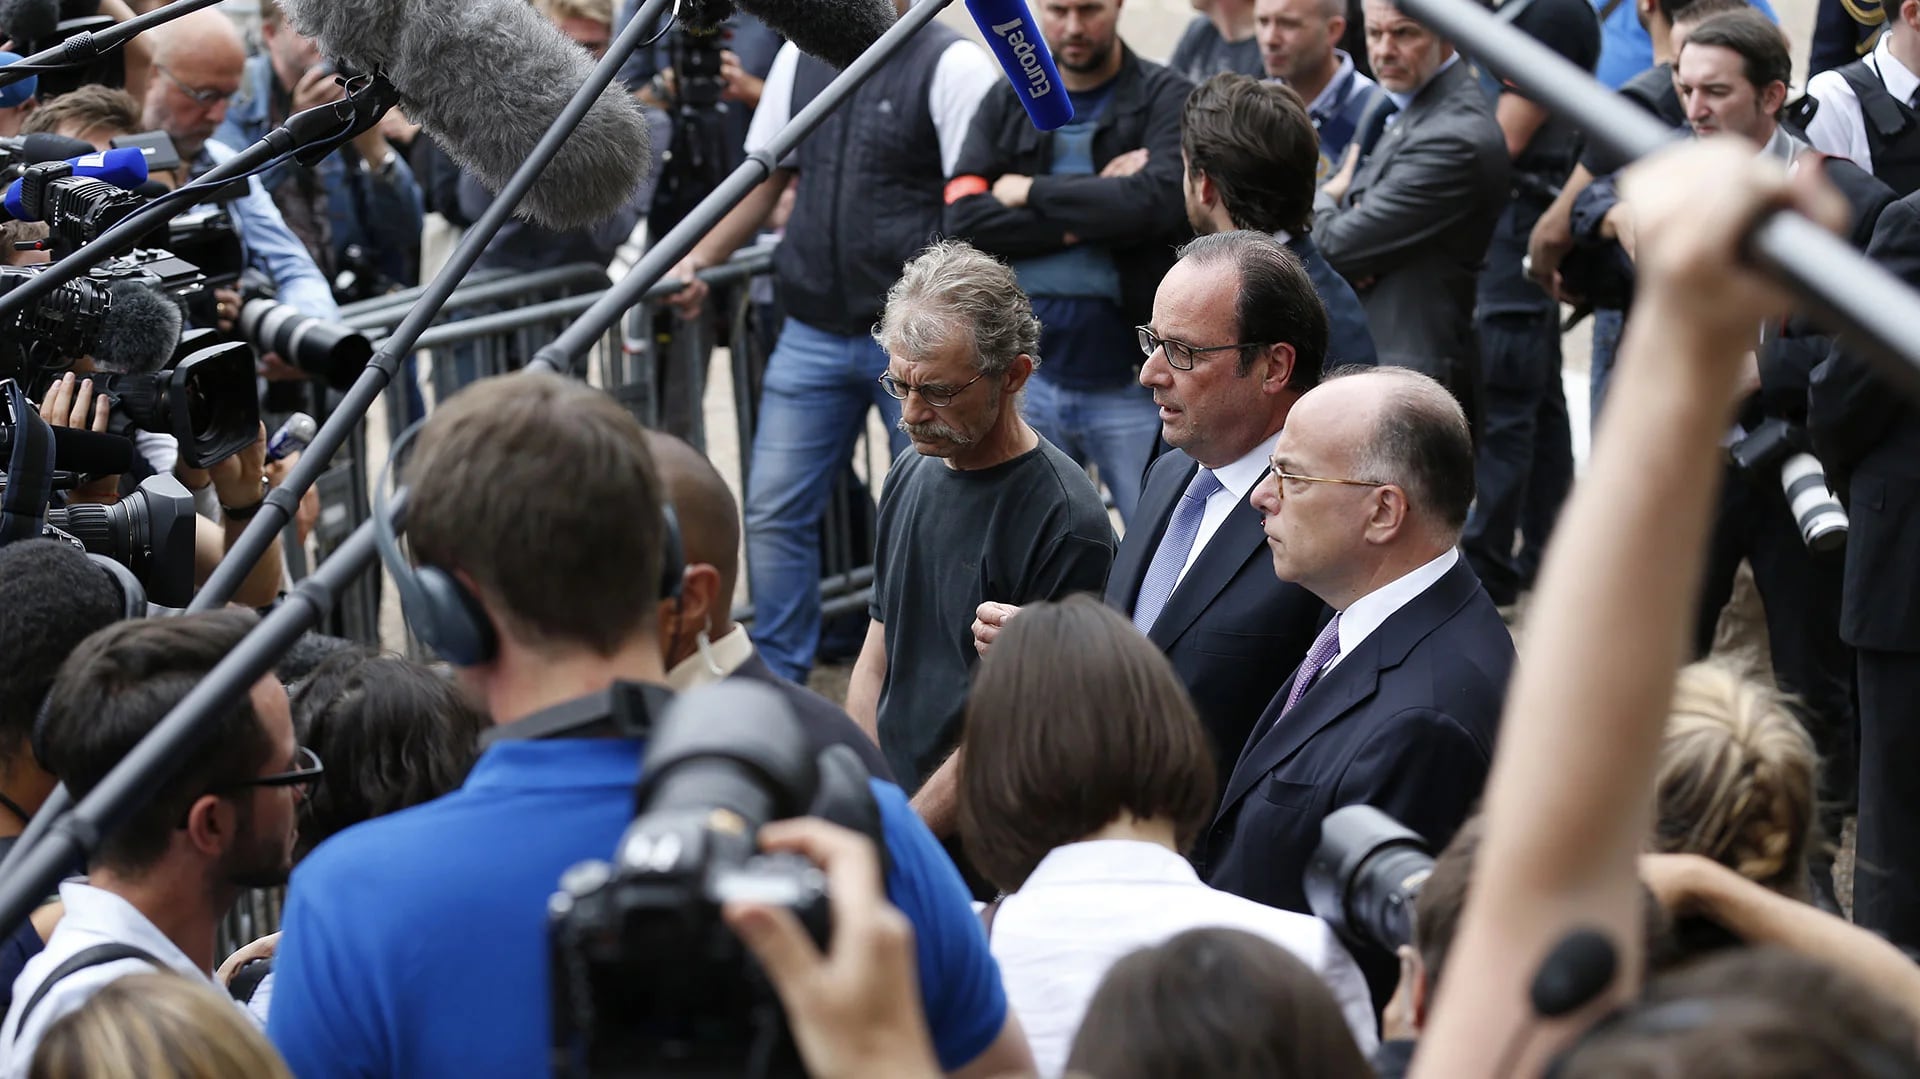 El presidente de Francia viajó al lugar del atentado, donde declaró que se debe luchar contra el ISIS “por todos los medios” (AFP)